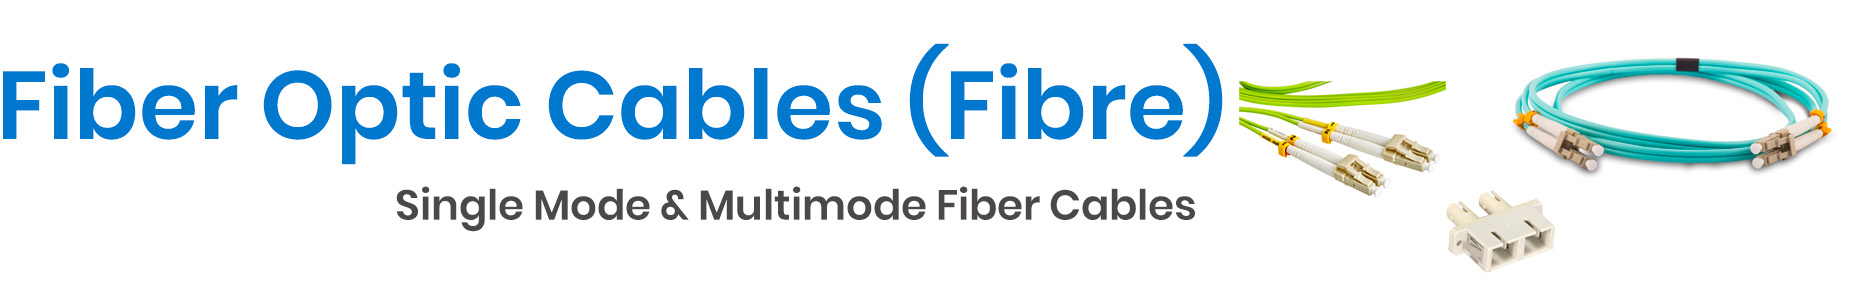 Fiber Optic Cables - Fiber Cable - Singlemode Fiber Optic Cable - Multimode Fiber Optic Cable